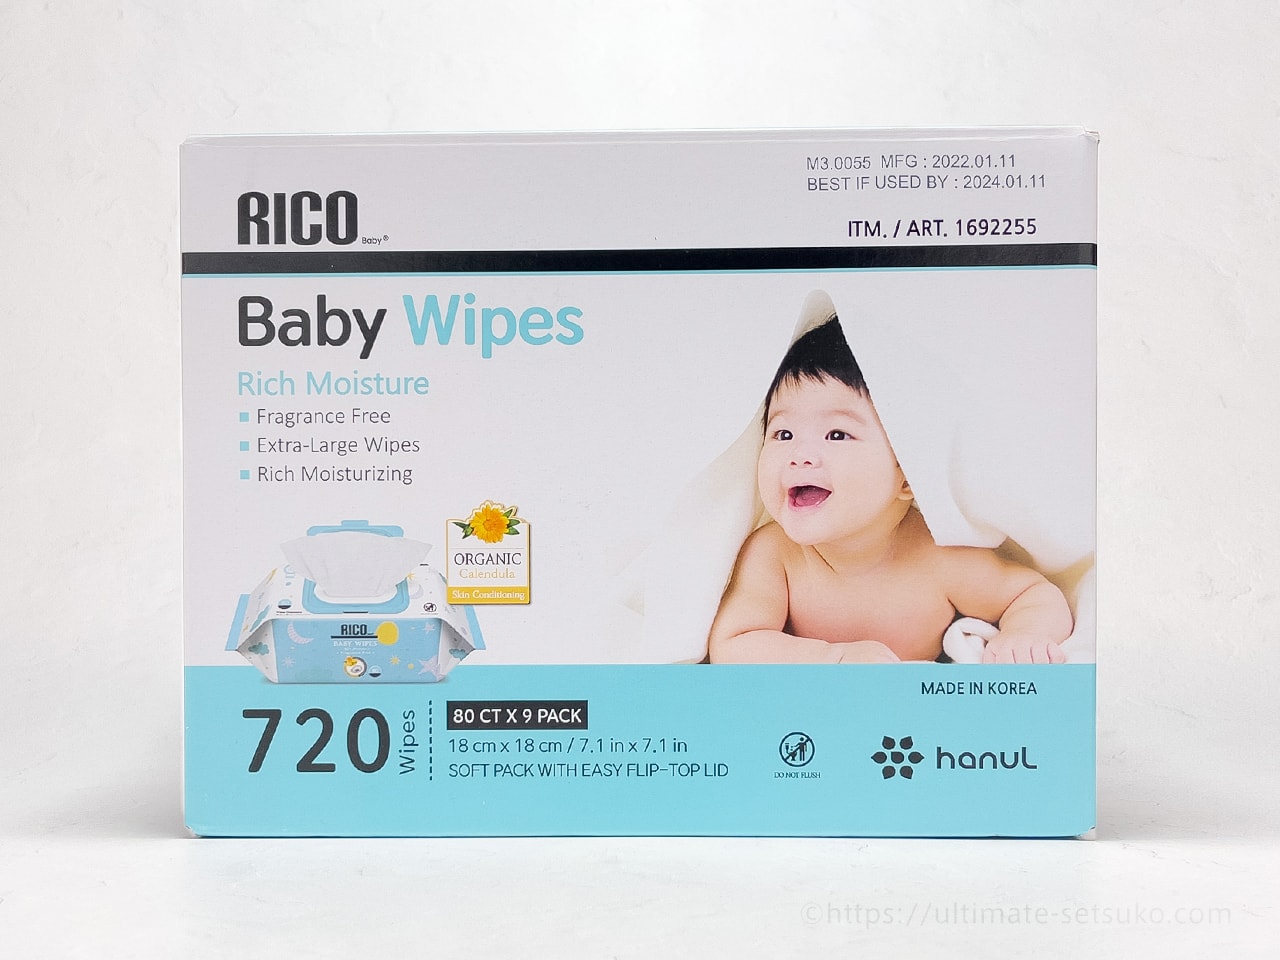 コストコで買えるRICOの赤ちゃん用おしりふきのコスパが良くて使い 